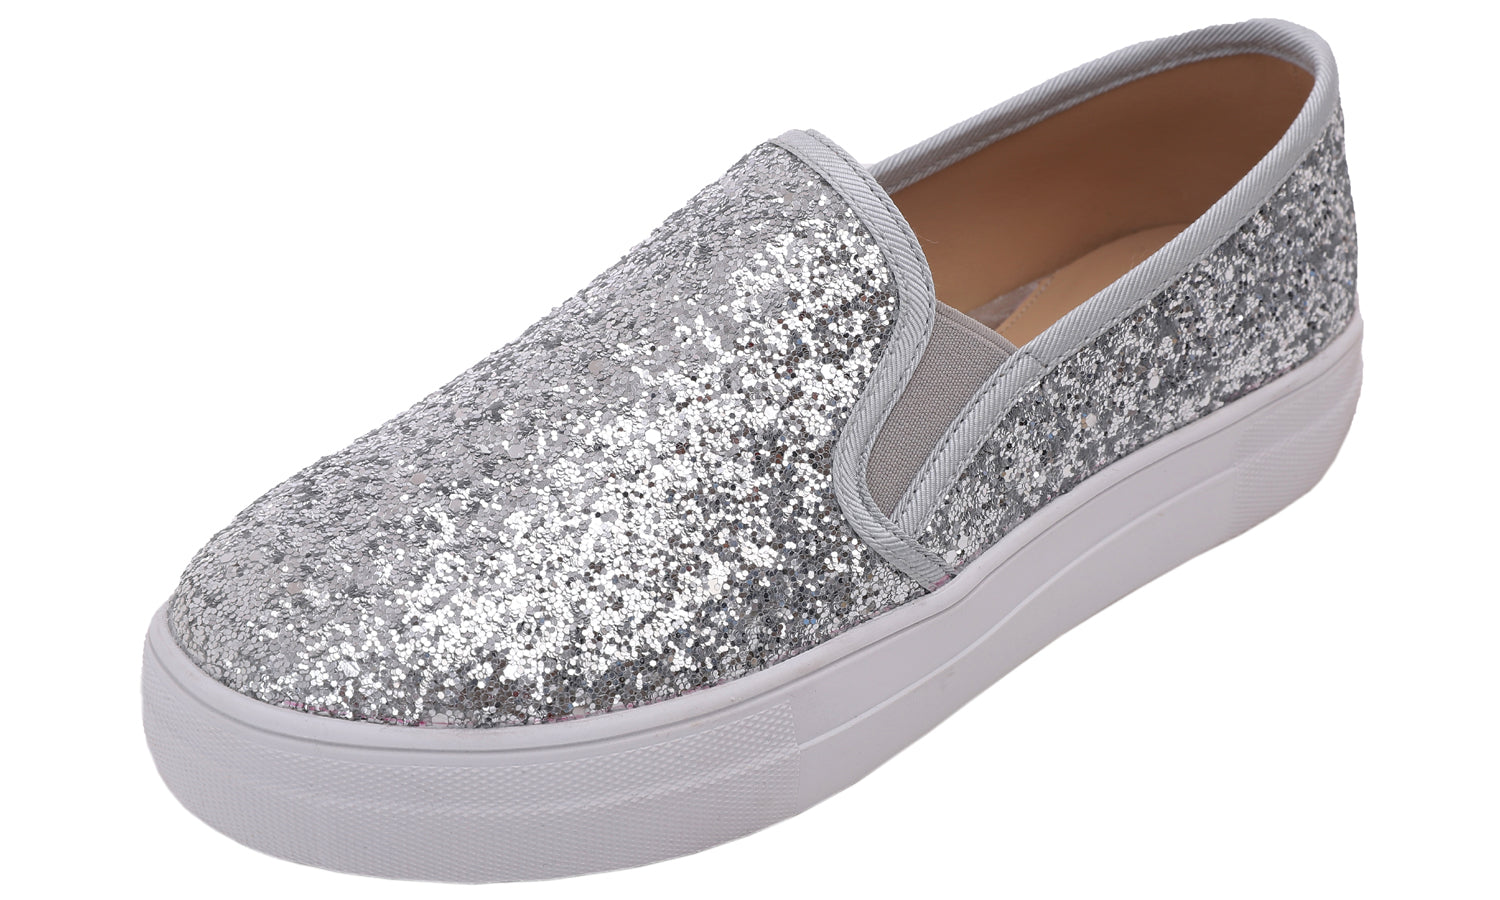 Feversole Women's Glitter Silver Platform Slip On Sneaker Casual Flat Loafers